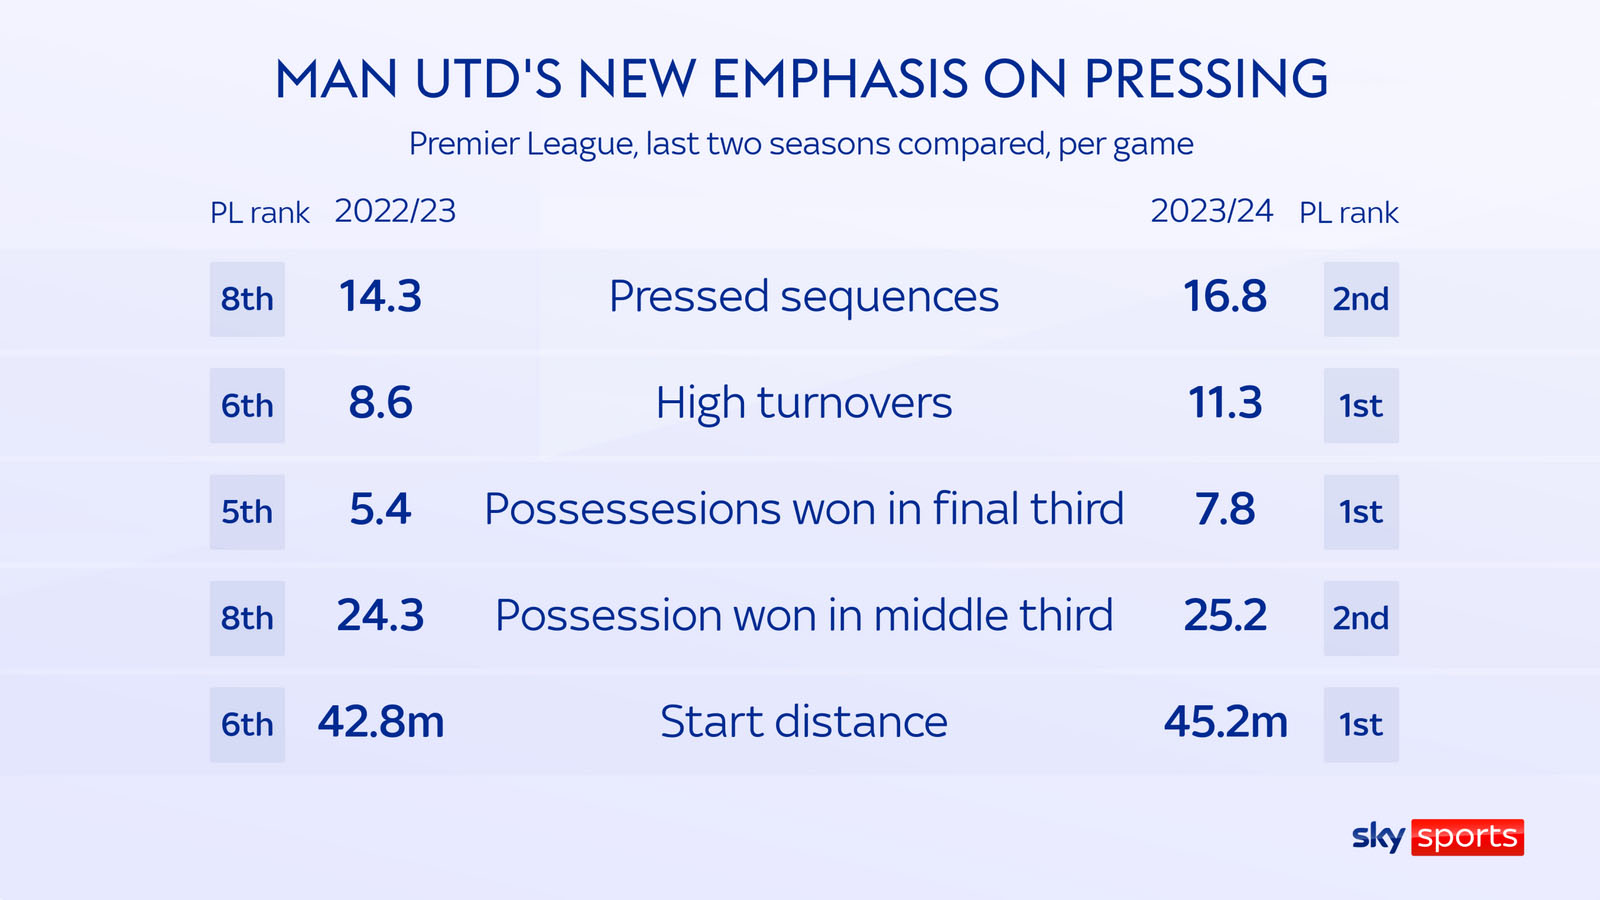 Các thông số ép sân của Man United đang nhiều hơn mùa trước. Ảnh: Sky Sports